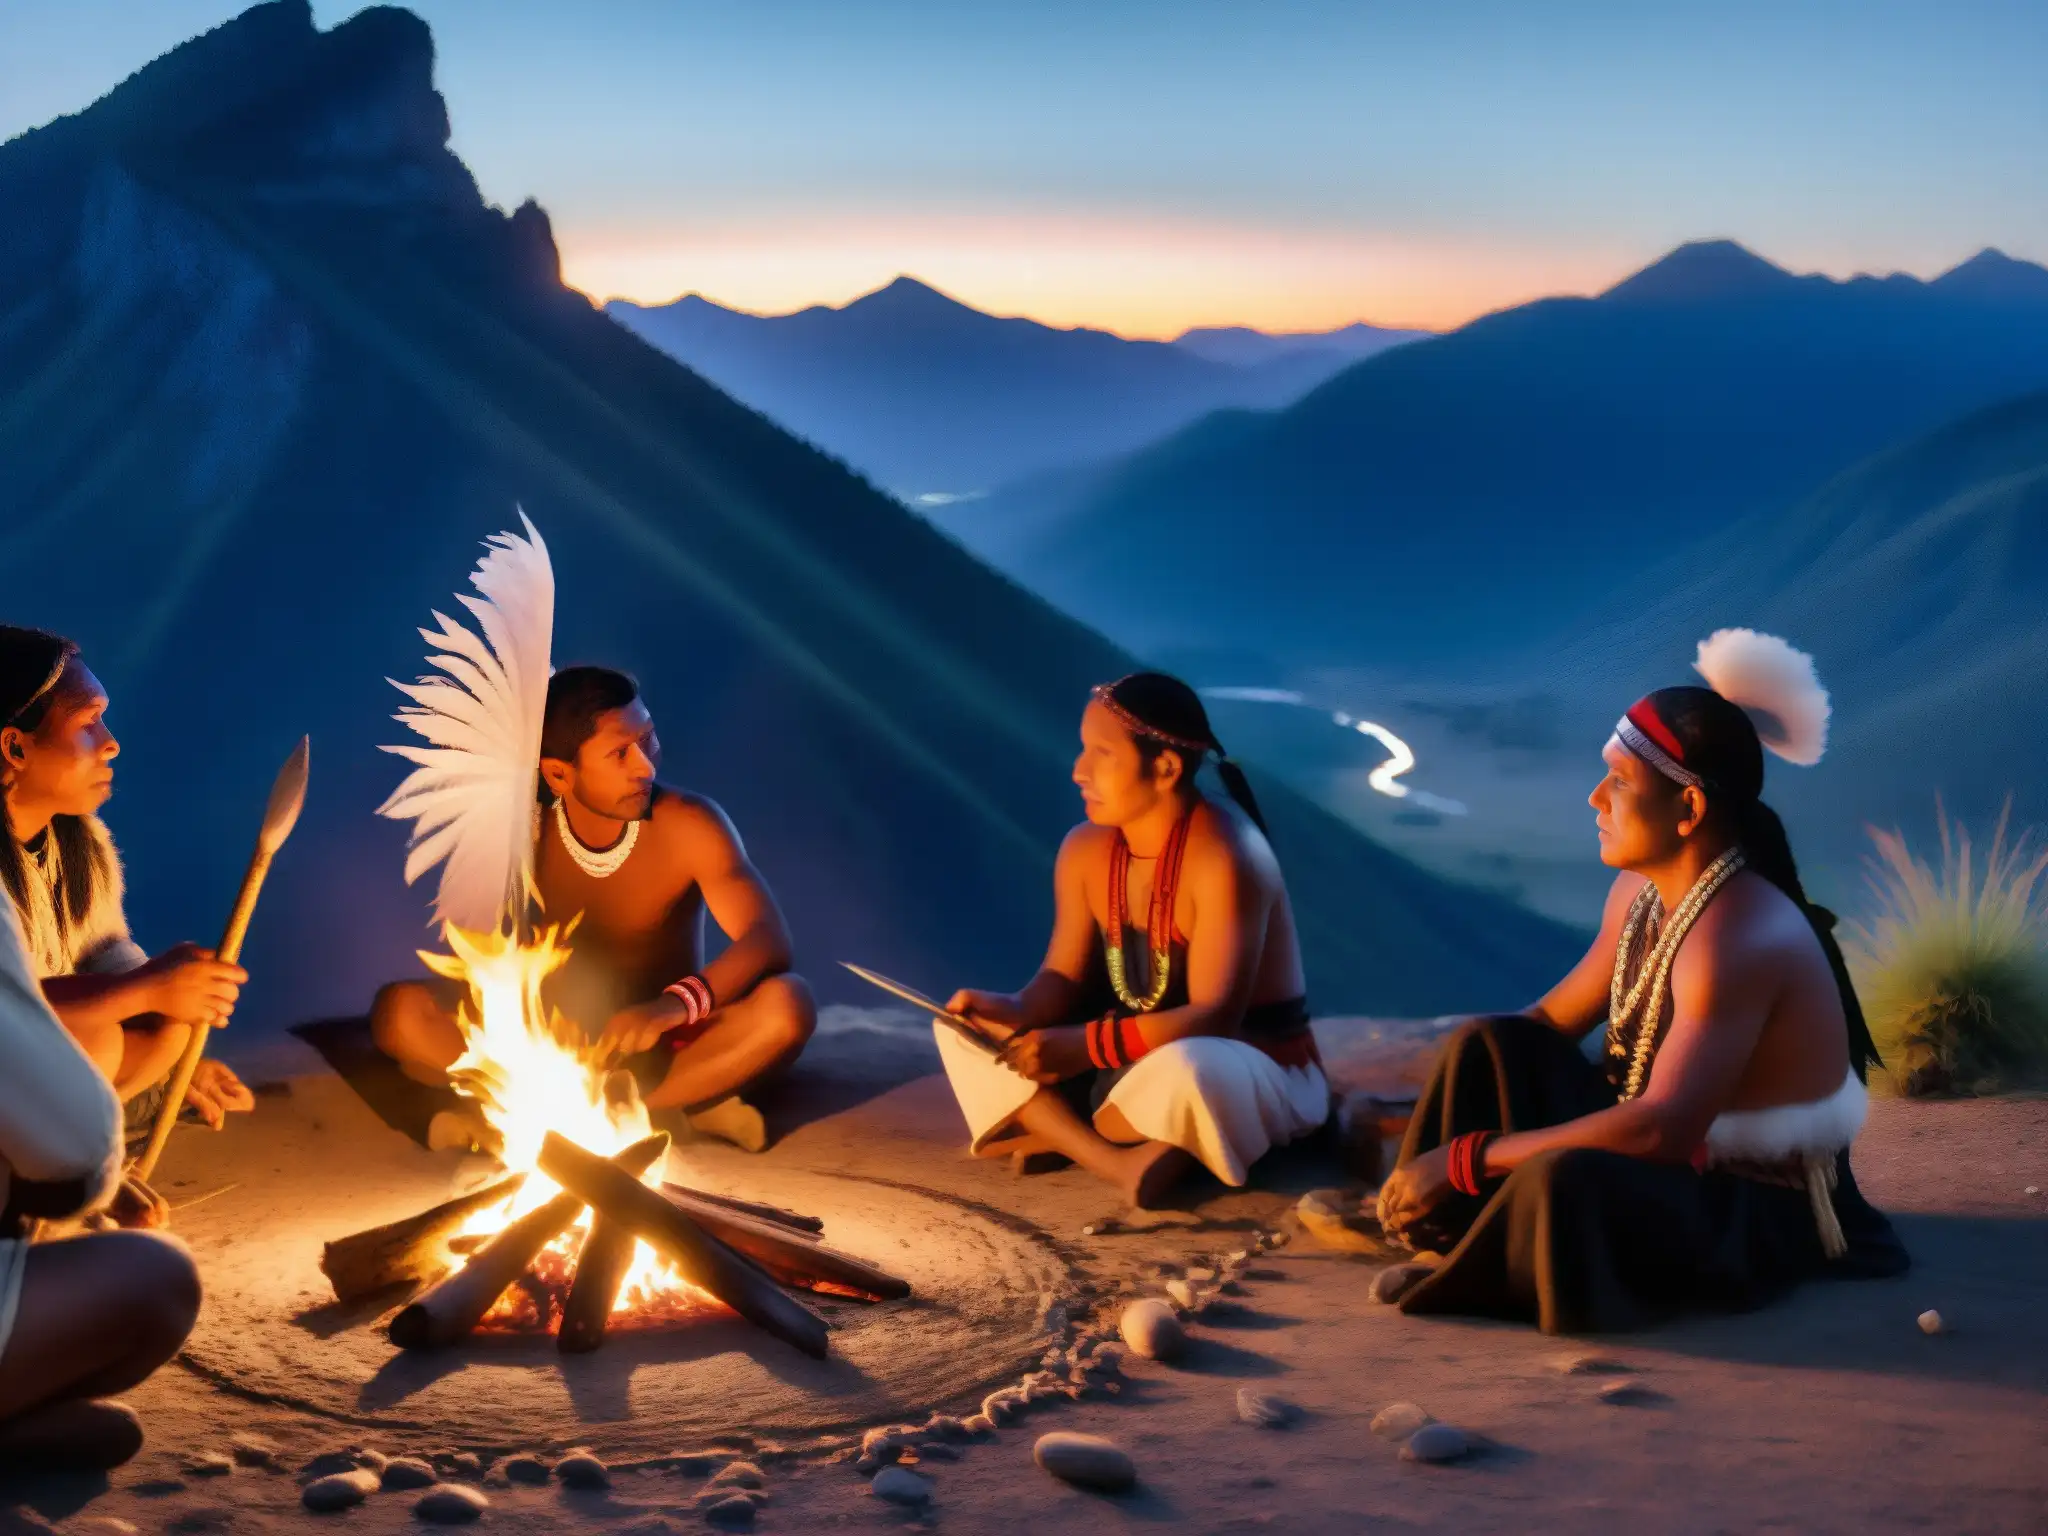 Un chamán realiza un ritual junto al fuego en la noche, rodeado de indígenas y un paisaje montañoso